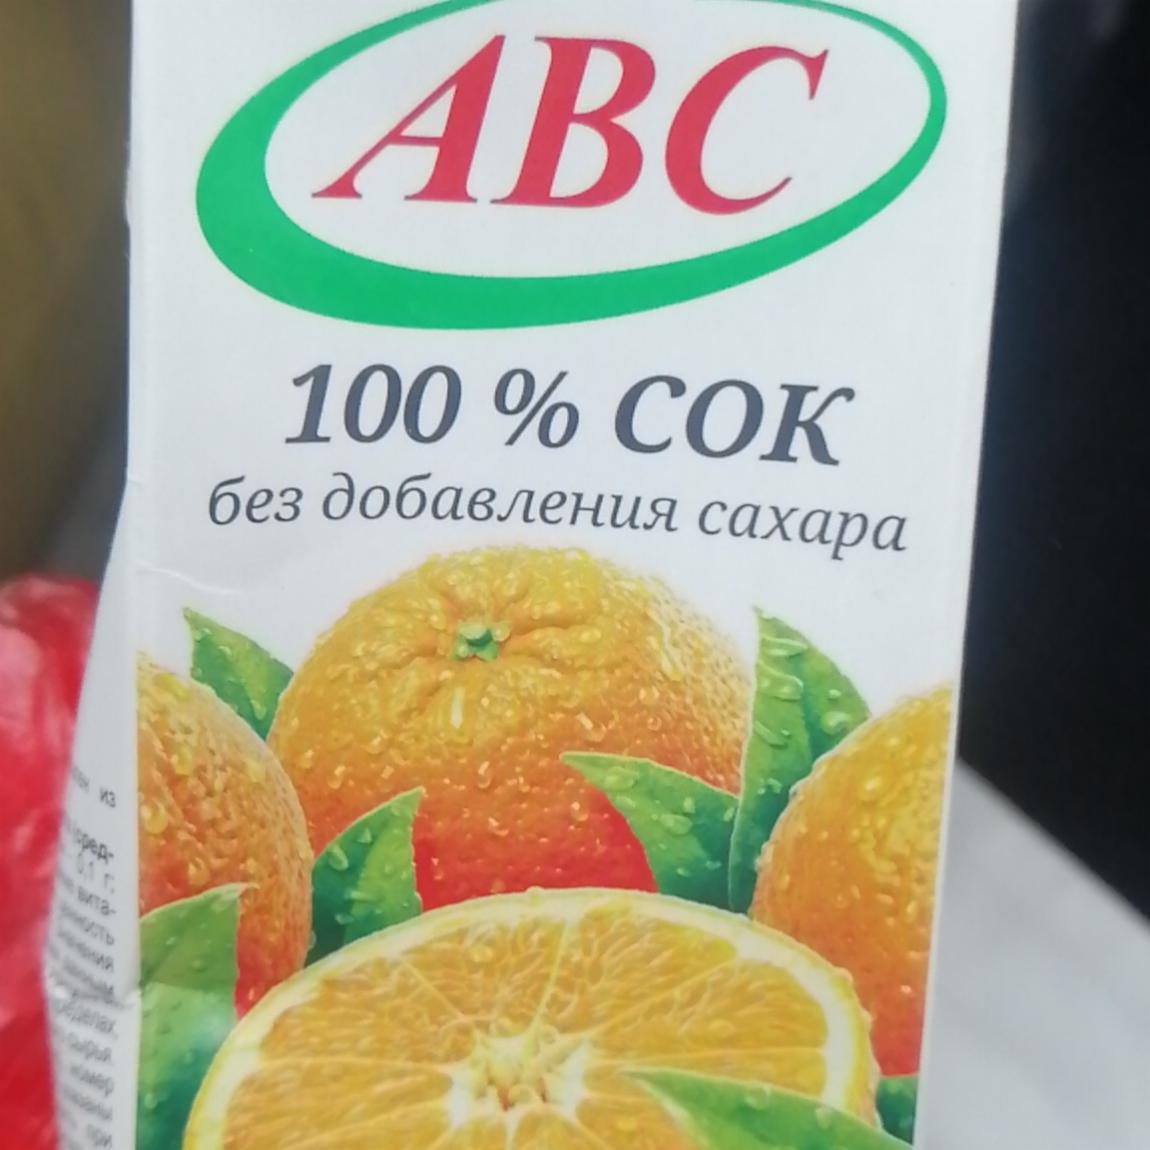 Фото - Апельсиновый сок ABC